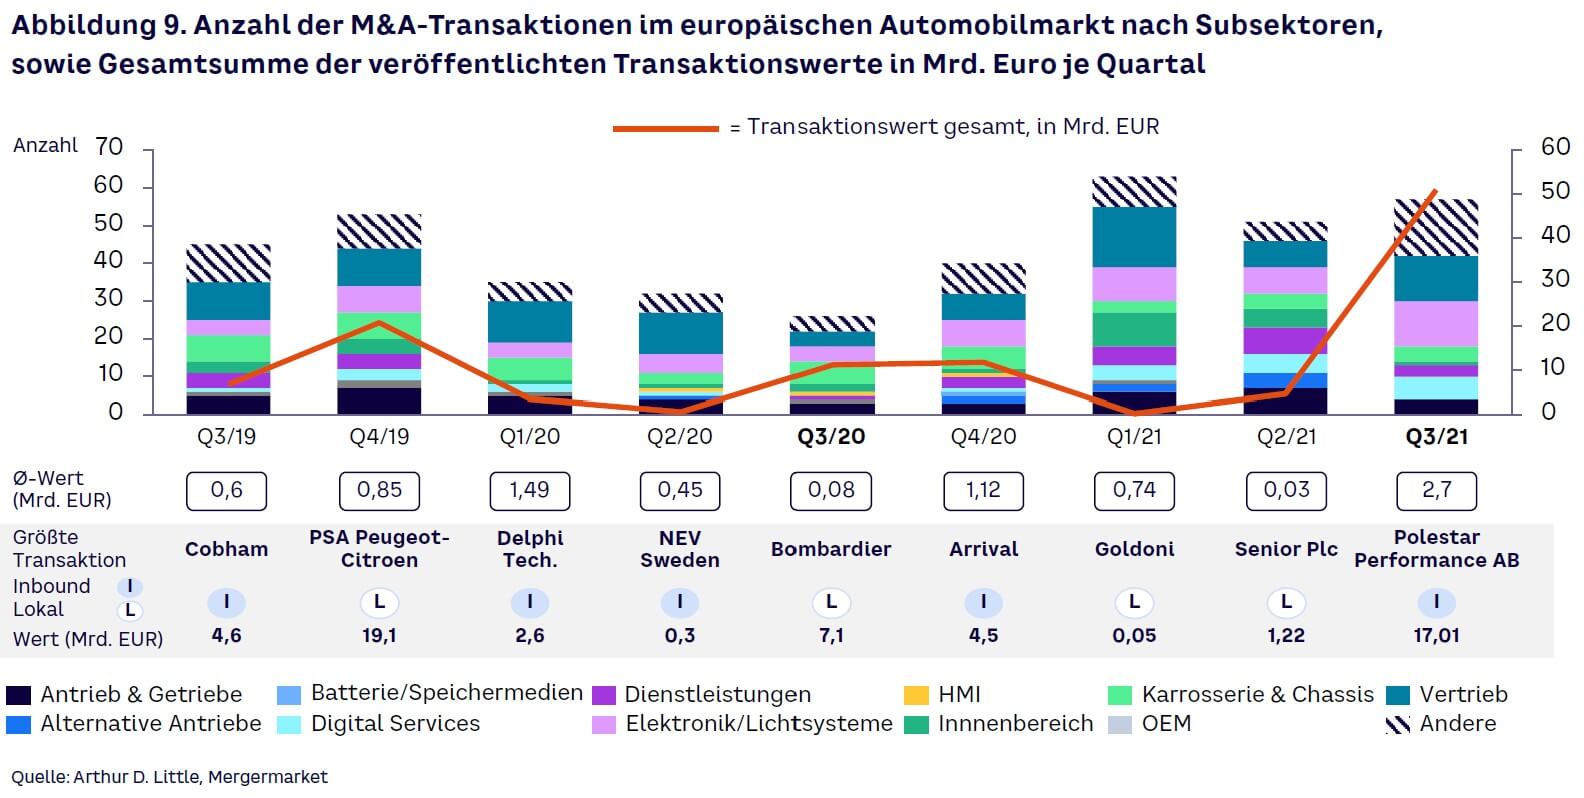 Abbildung 9. Anzahl der M&A-Transaktionen im europäischen Automobilmarkt nach Subsektoren, sowie Gesamtsumme der veröffentlichten Transaktionswerte in Mrd. Euro je Quartal